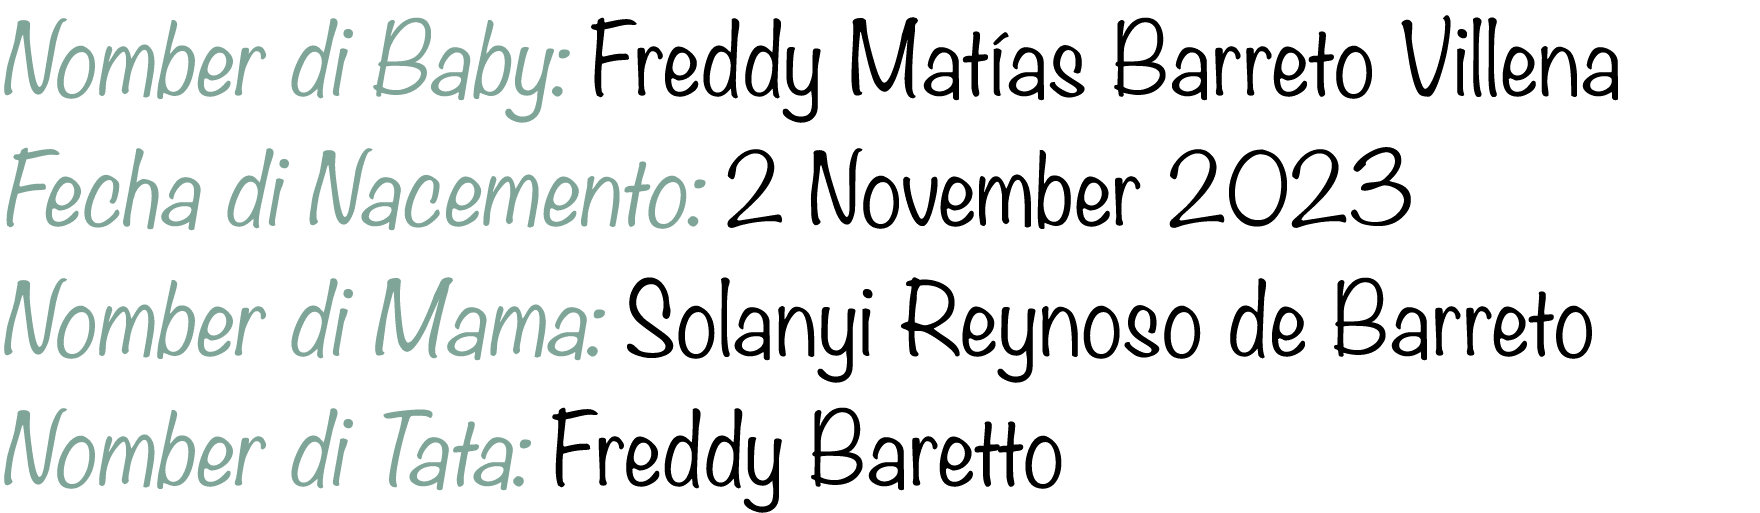 Nomber di Baby: Freddy Mat as Barreto Villena Fecha di Nacemento: 2 November 2023 Nomber di Mama: Solanyi Reynoso de ...